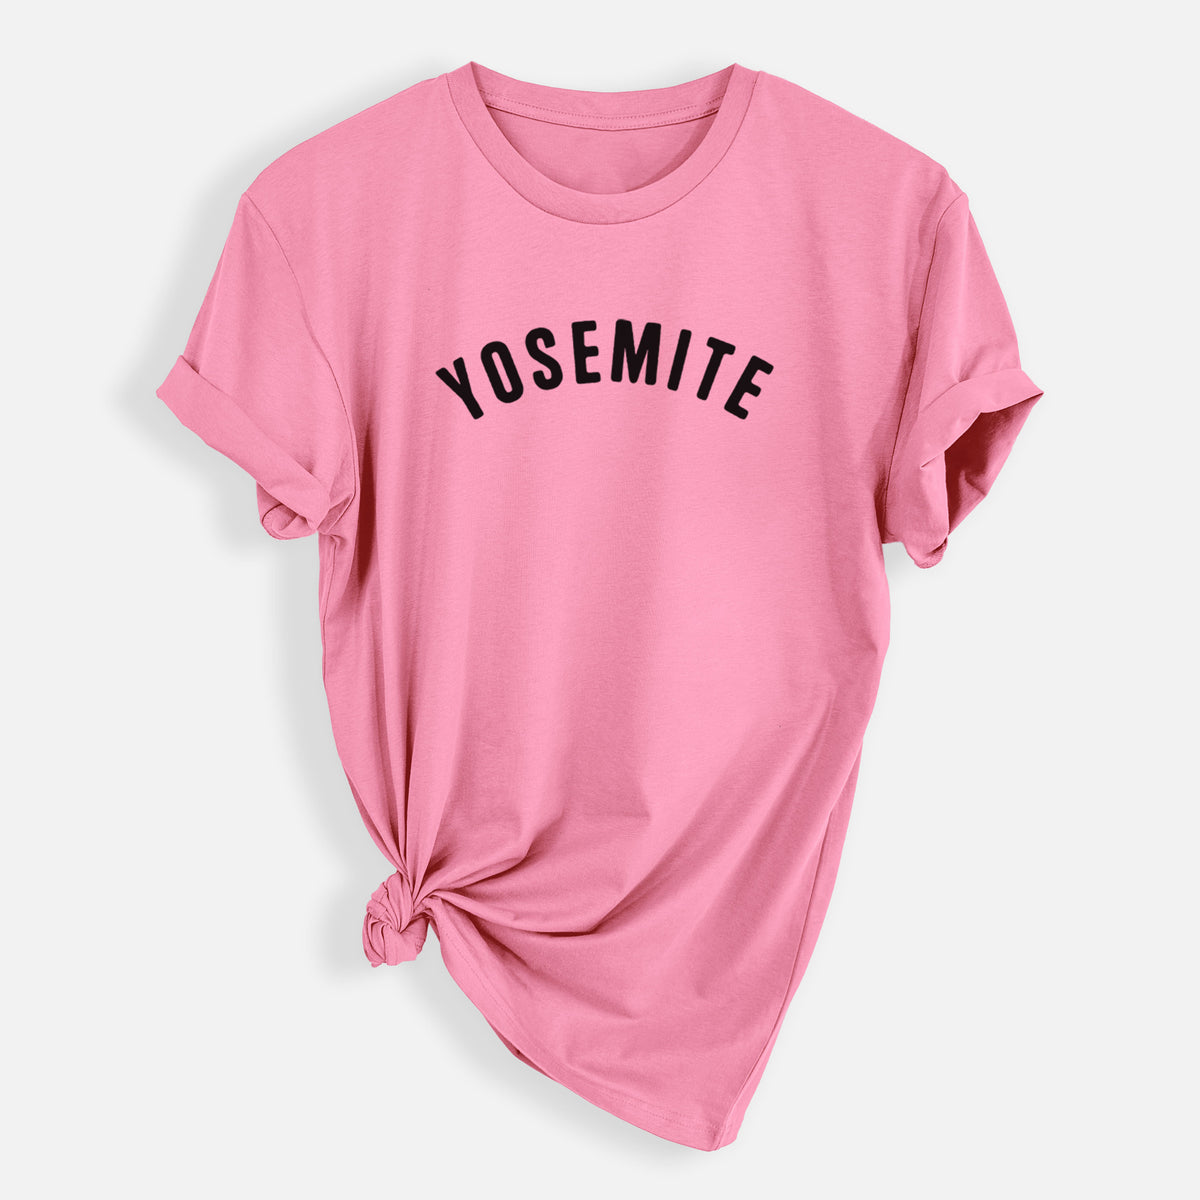 Yosemite - Mens Everyday Staple Tee